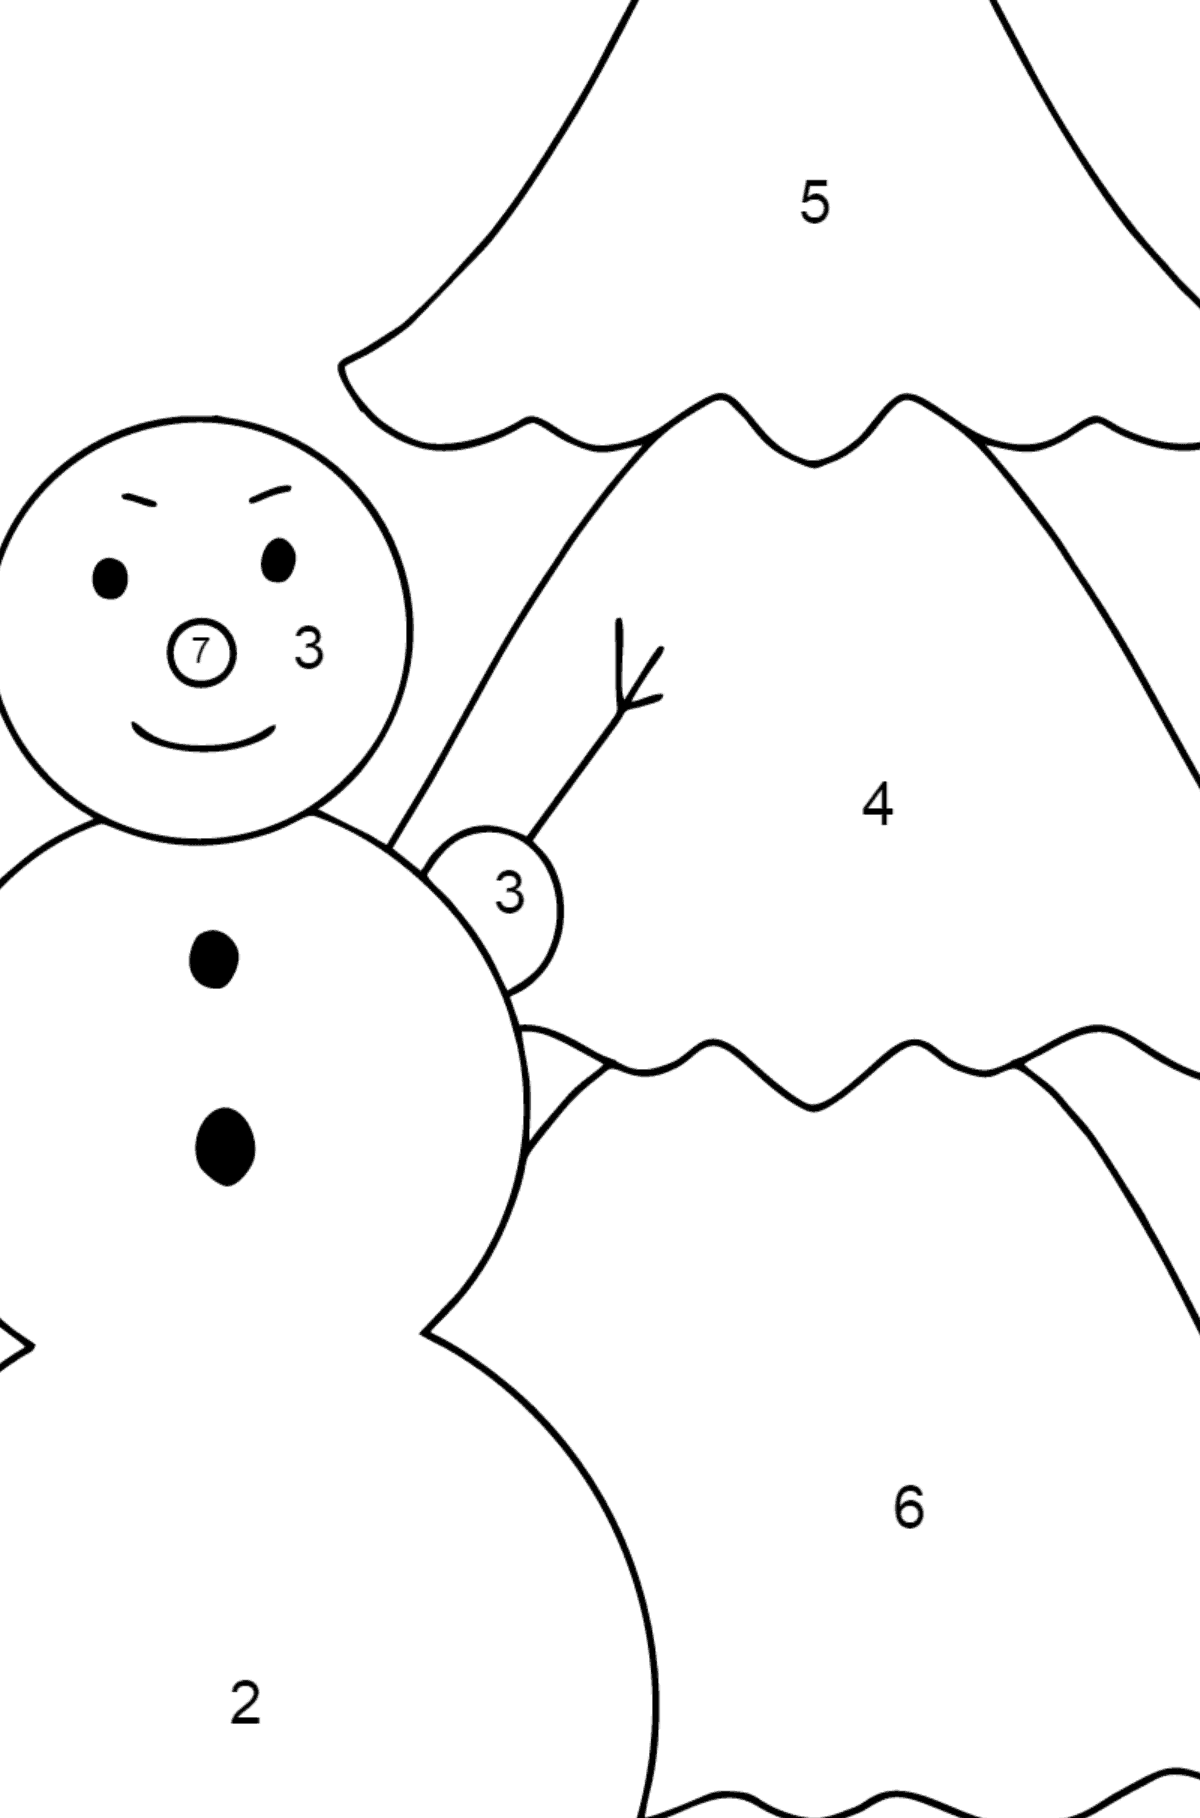 Ausmalbild: Schneemann und Weihnachtsbaum - Malen nach Zahlen für Kinder